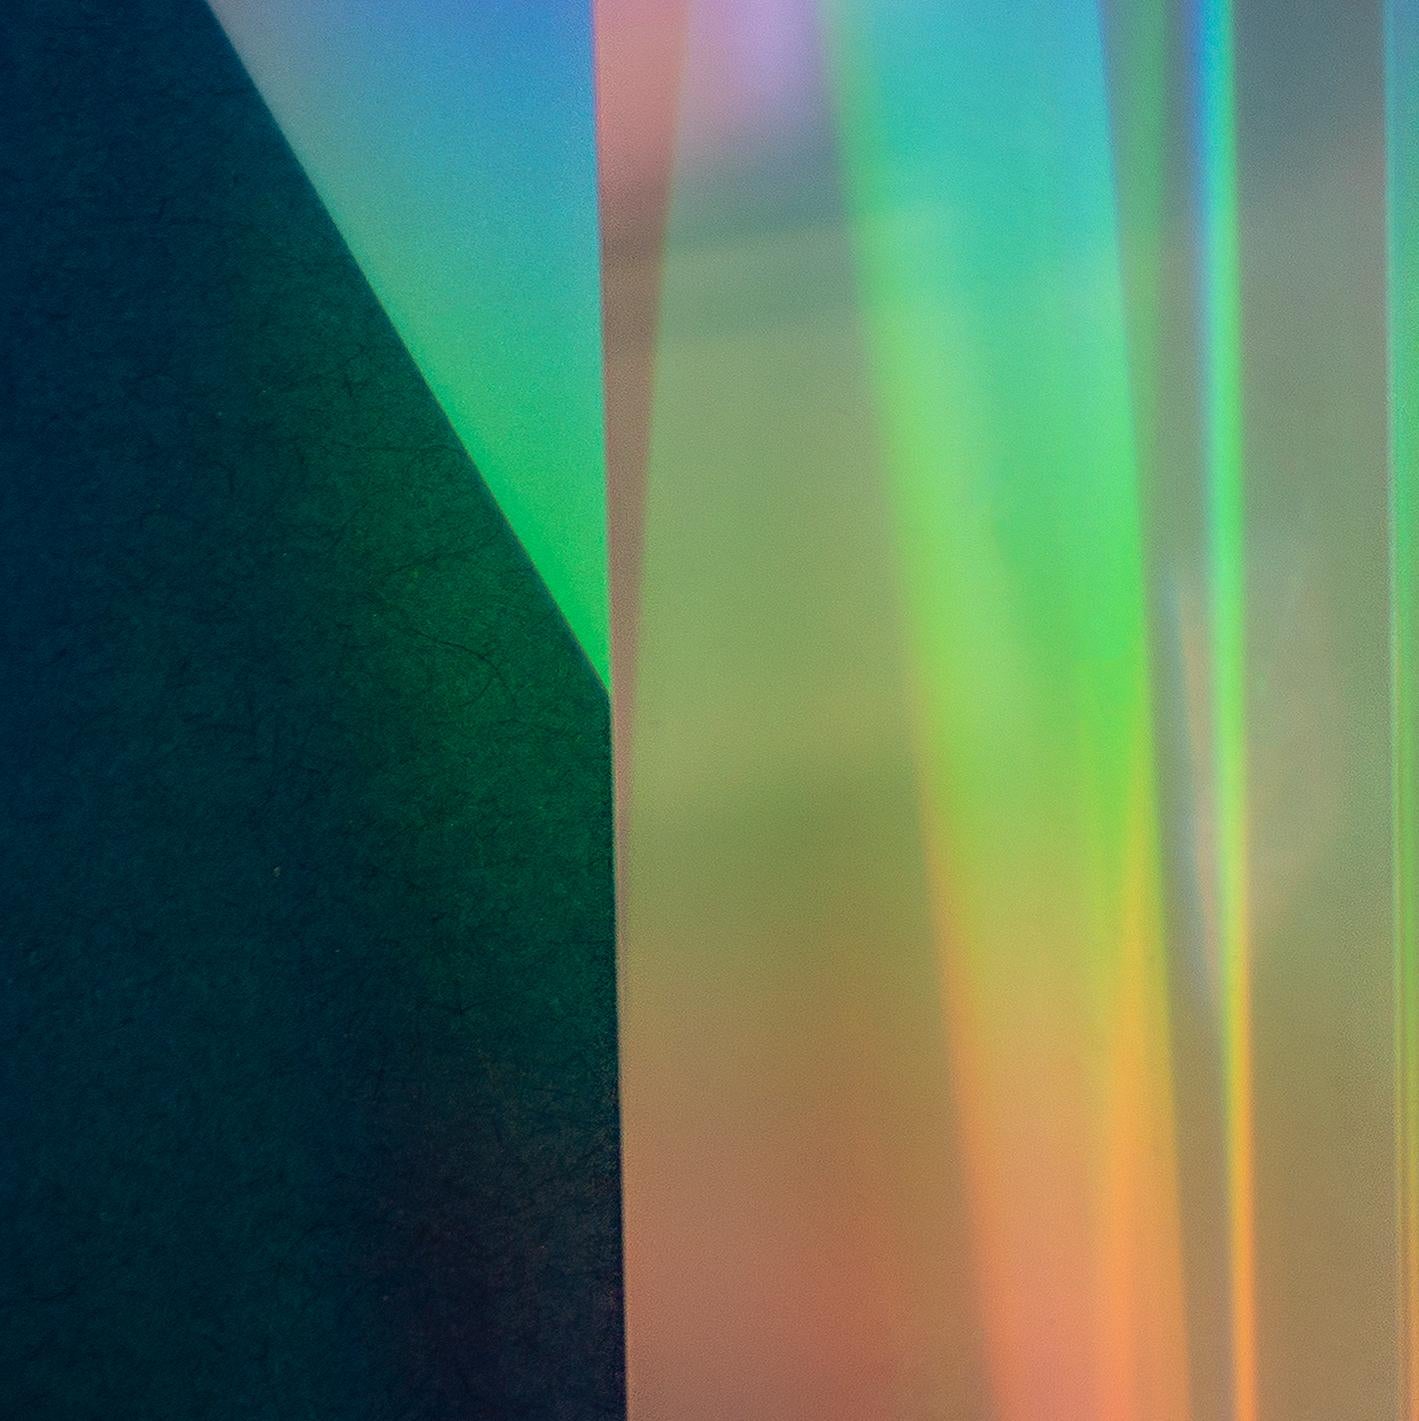 Leuchtend Echo II: abstrakte Licht- und Farbfotografie mit Silber, Blau, Rot und Grün (Abstrakt), Photograph, von Diane Lachman